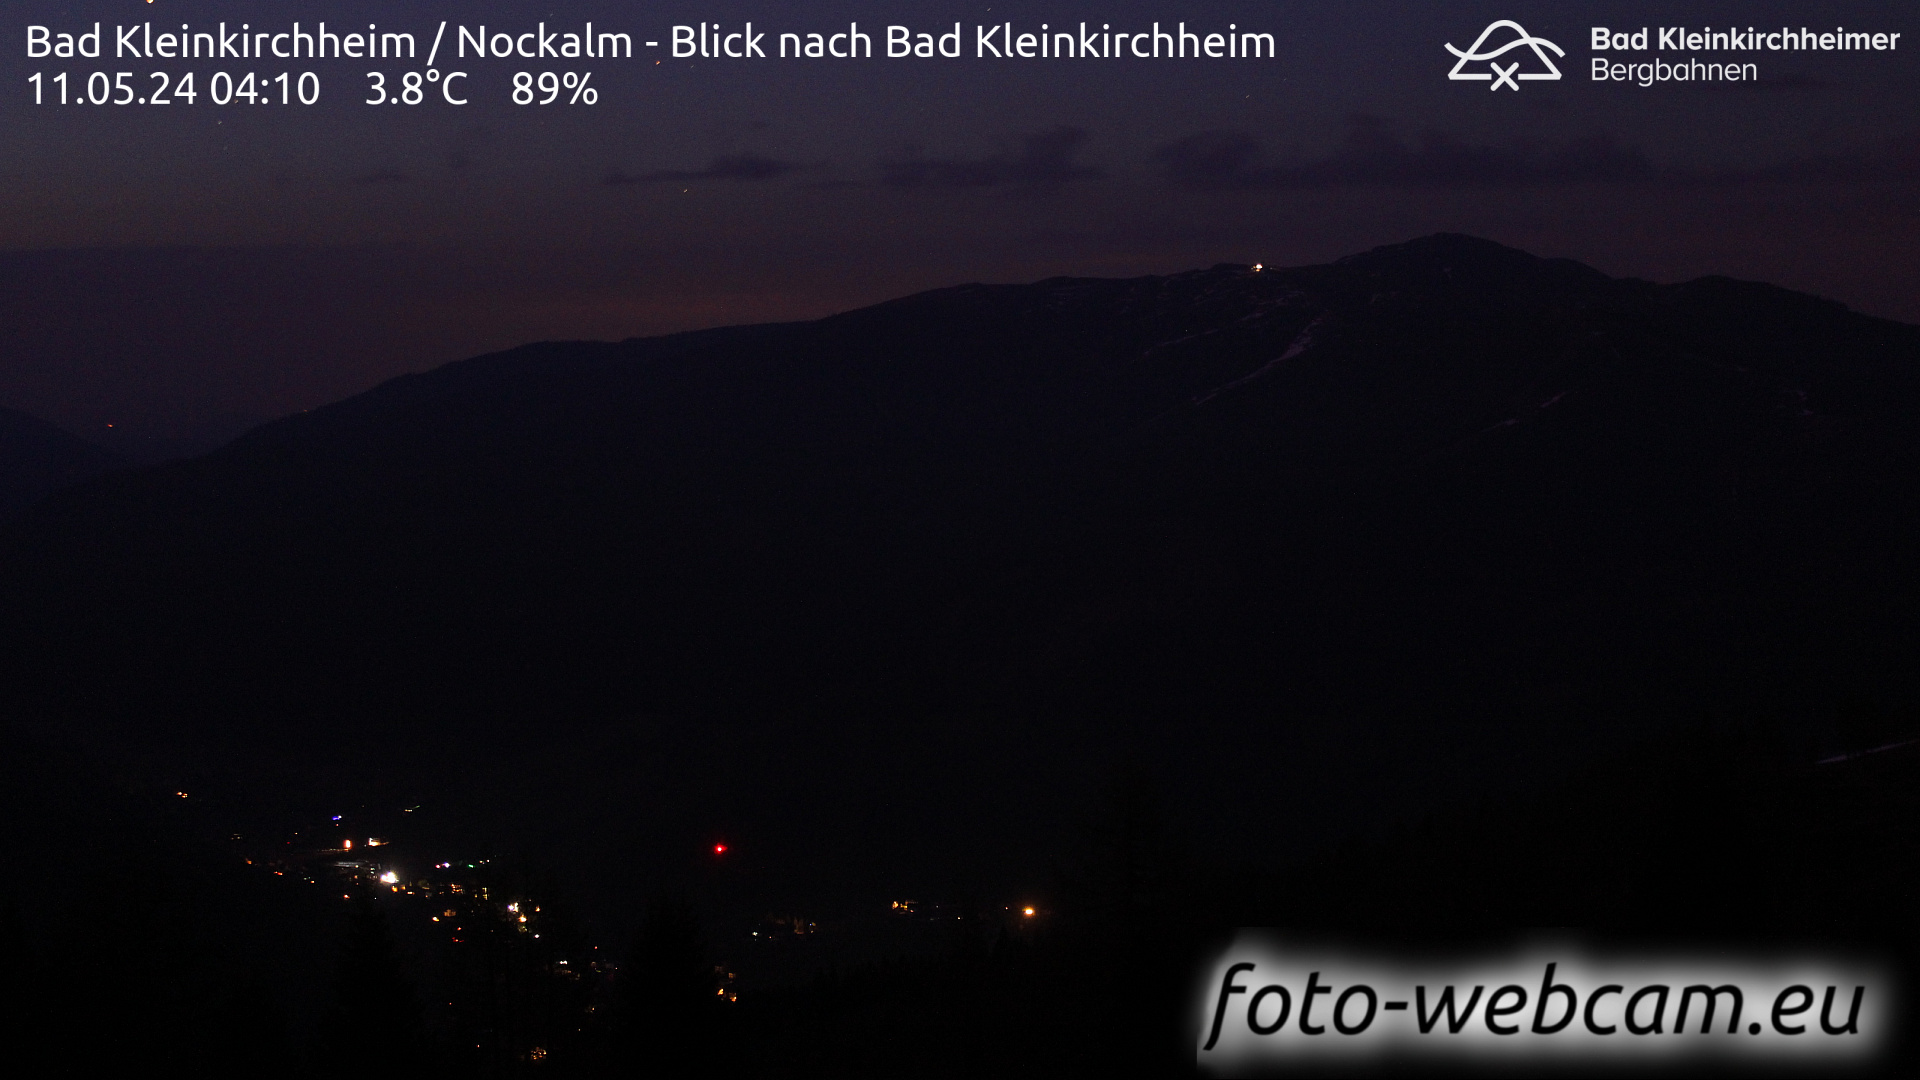 Bad Kleinkirchheim Lun. 04:17